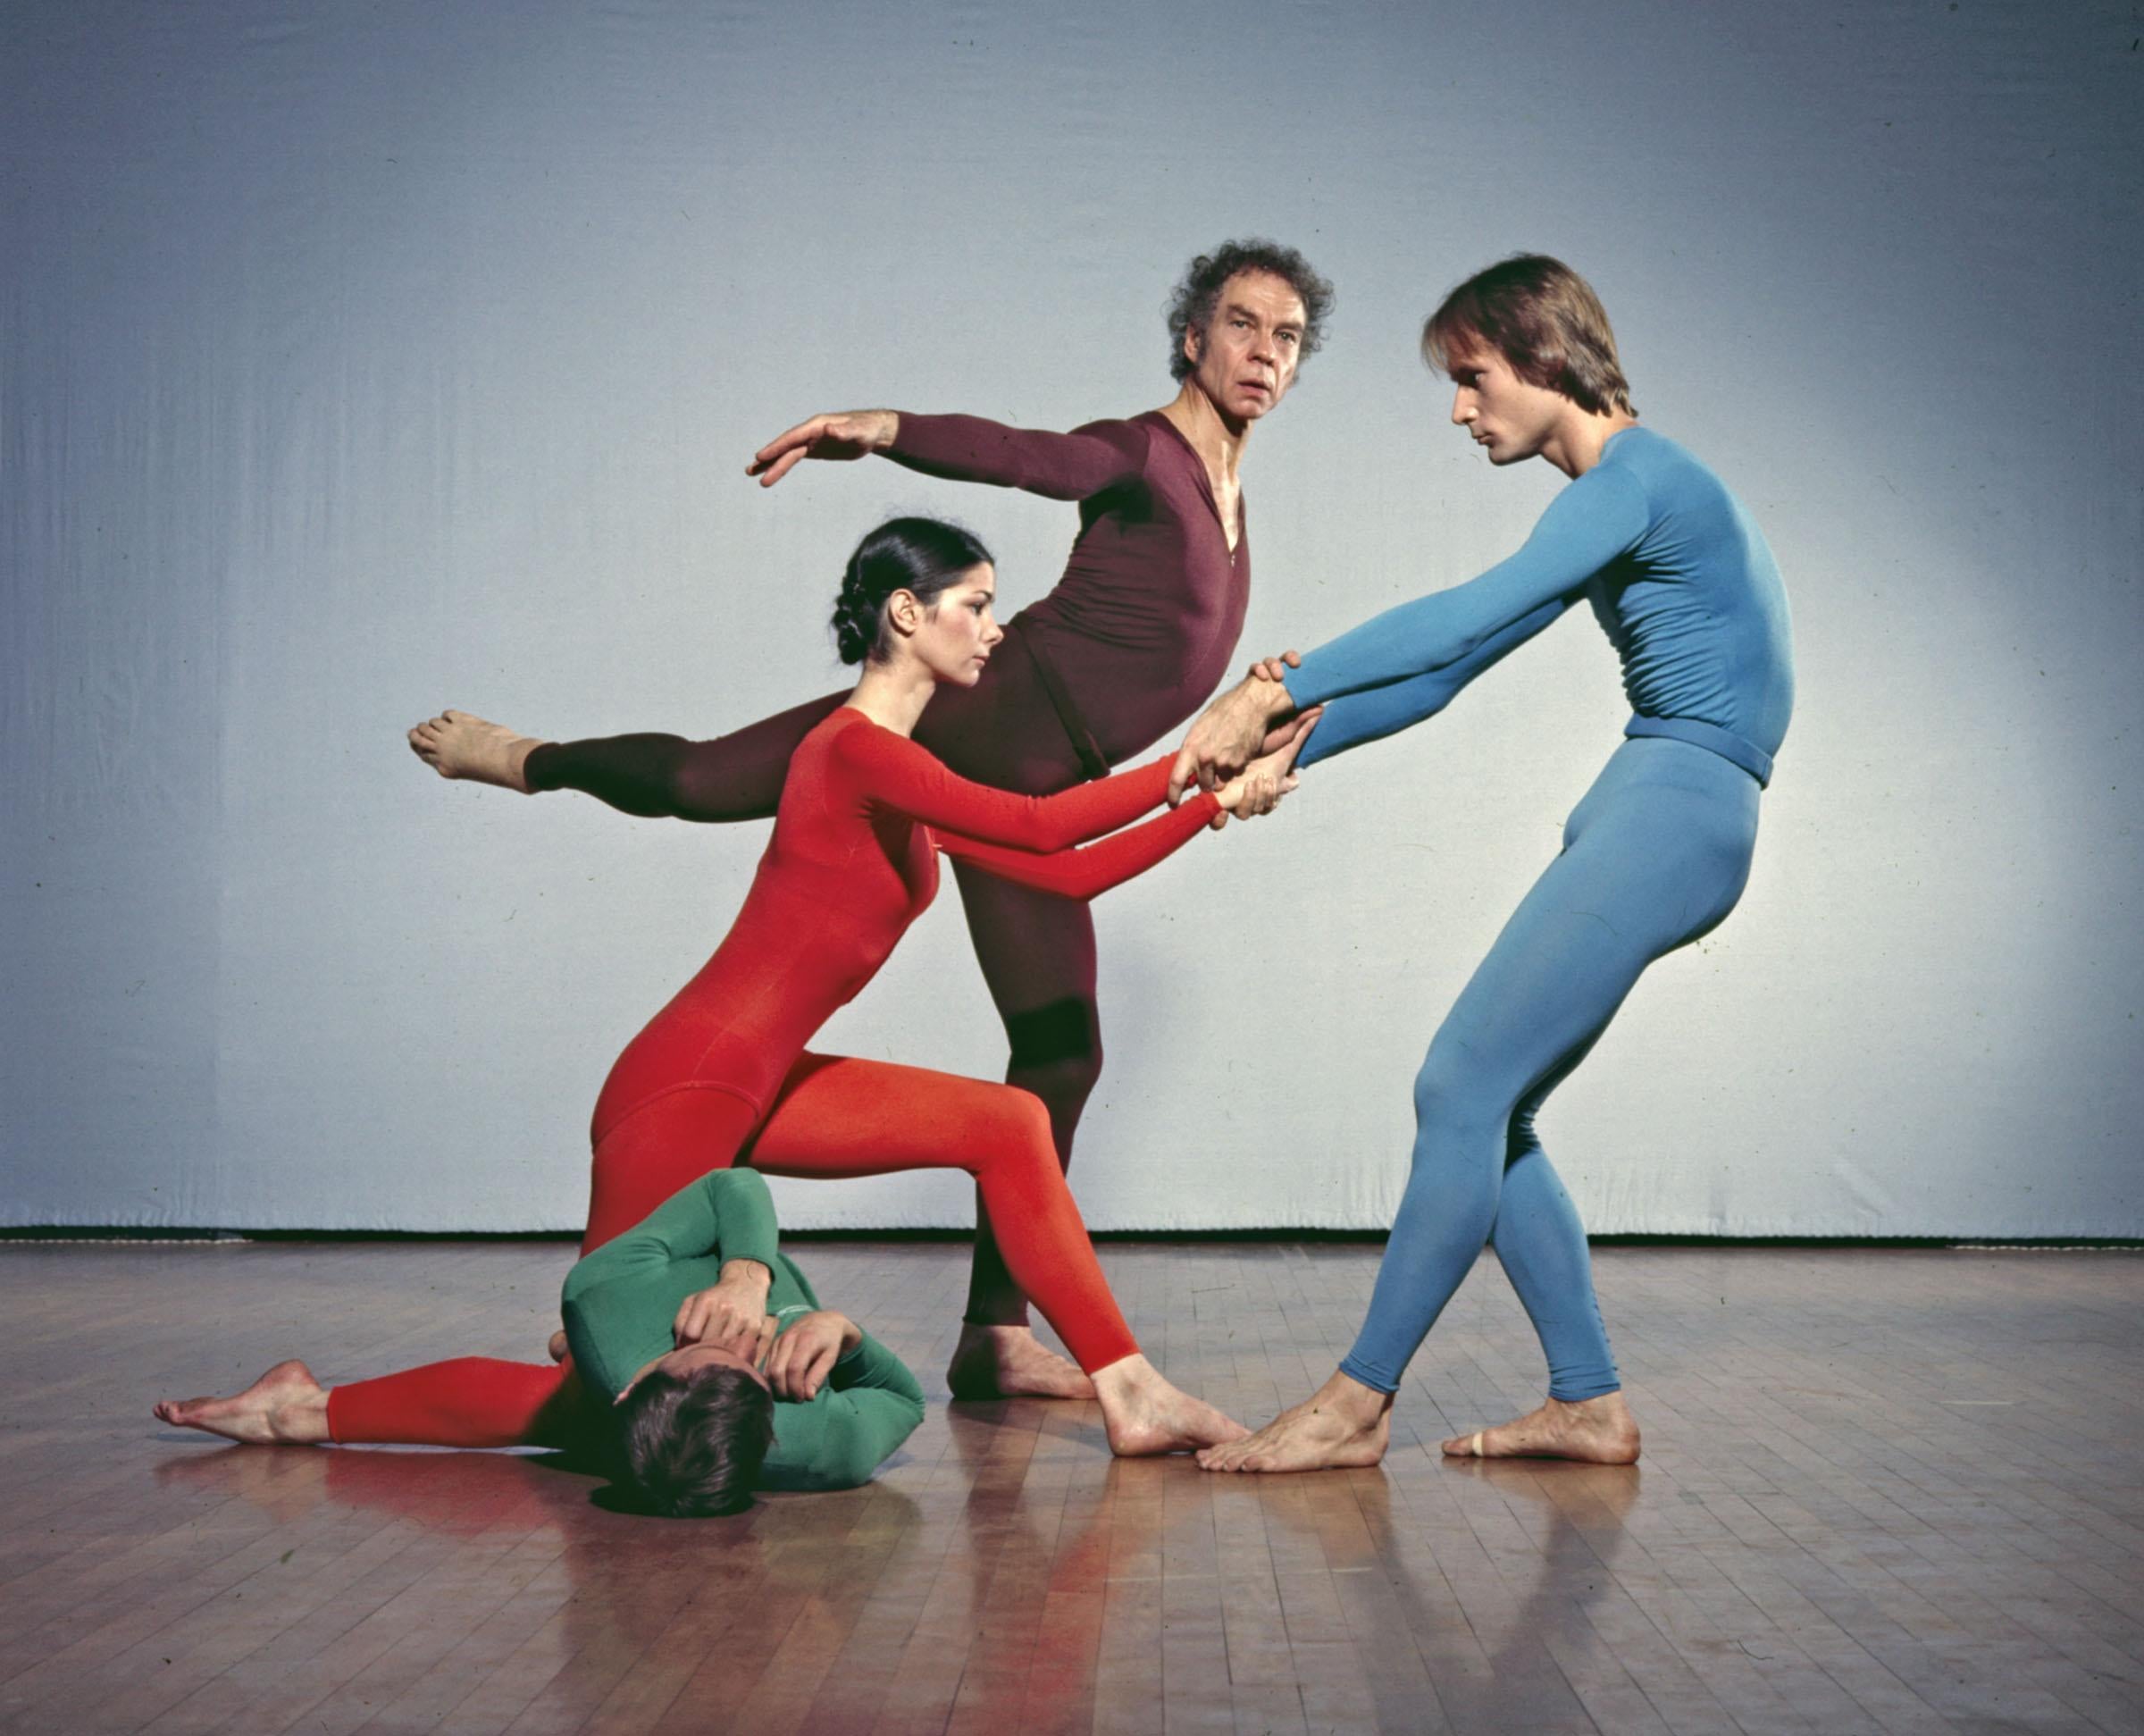 Color Photograph Jack Mitchell - Répertoire de la société de danse Merce Cunningham, couleur 17 x 22"  Photographie d'exposition